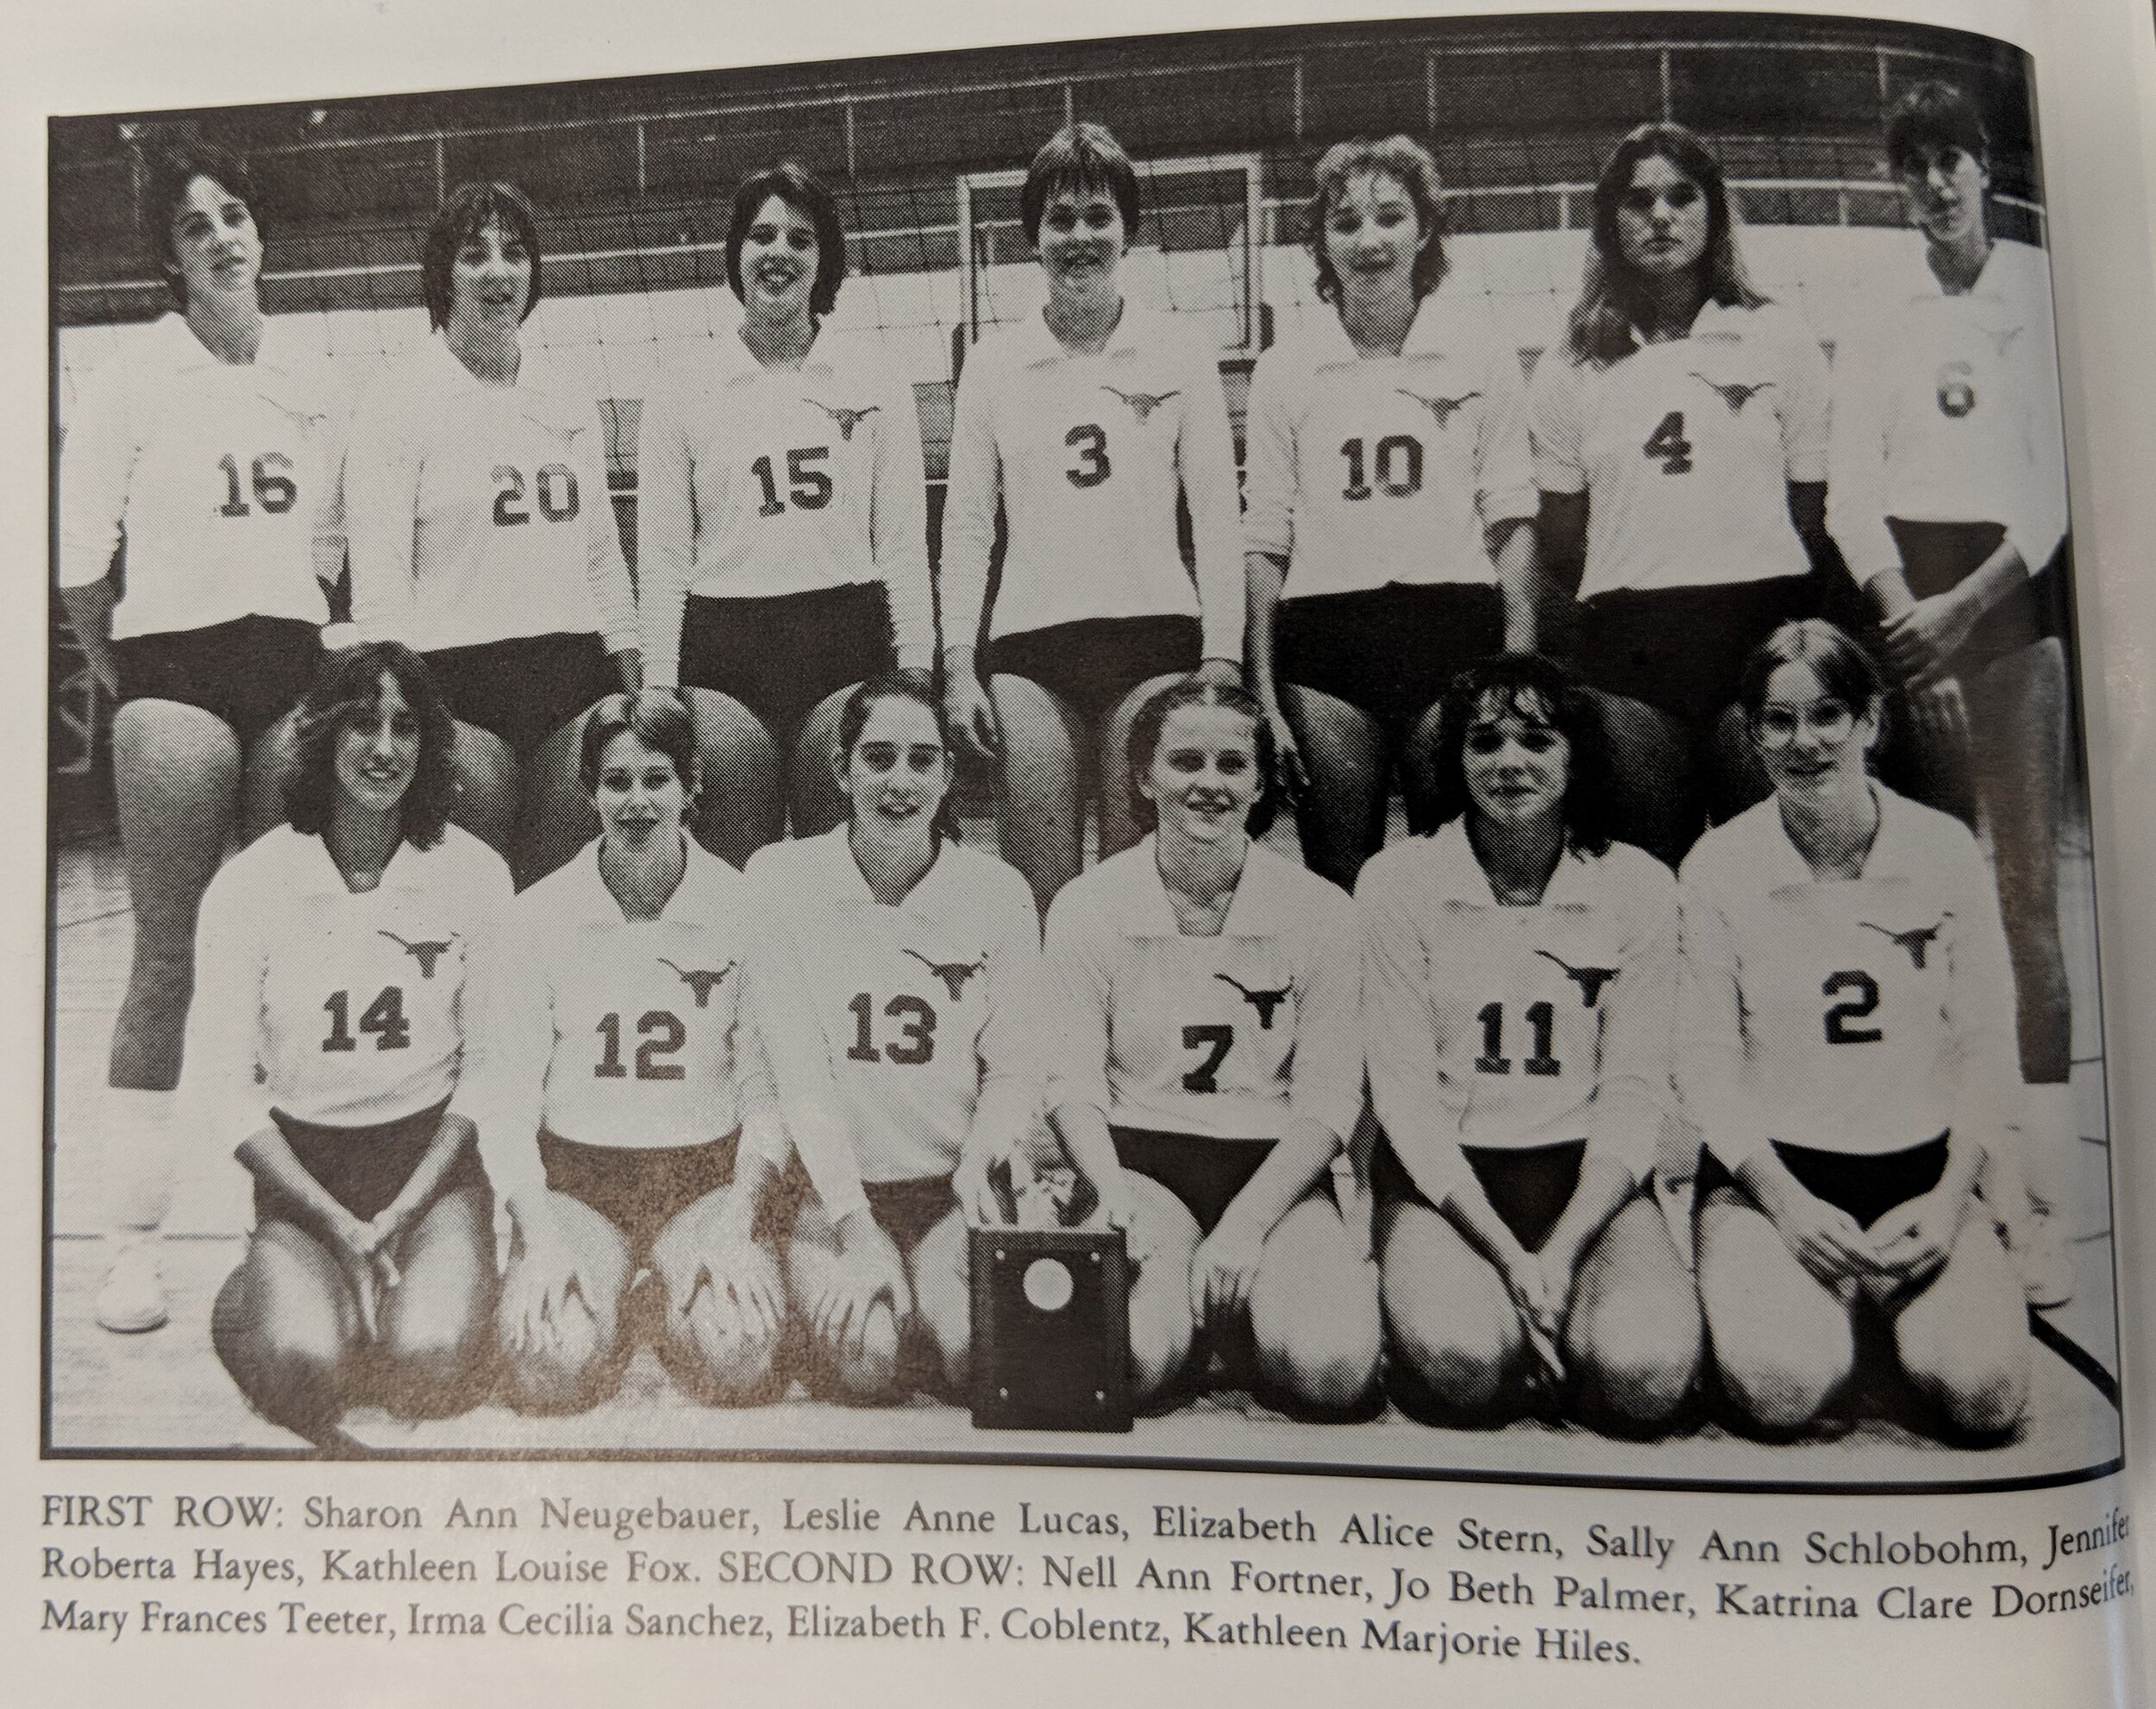  1982 W. Volleyball  first row- Neugebauer, Lucas, Stern, Schlobohm, Hayes, Fox  - top ros- 'Fortnere, Palmer, Dorn seifert, Teeter, Sanchez, Coblentz, Hiles. 